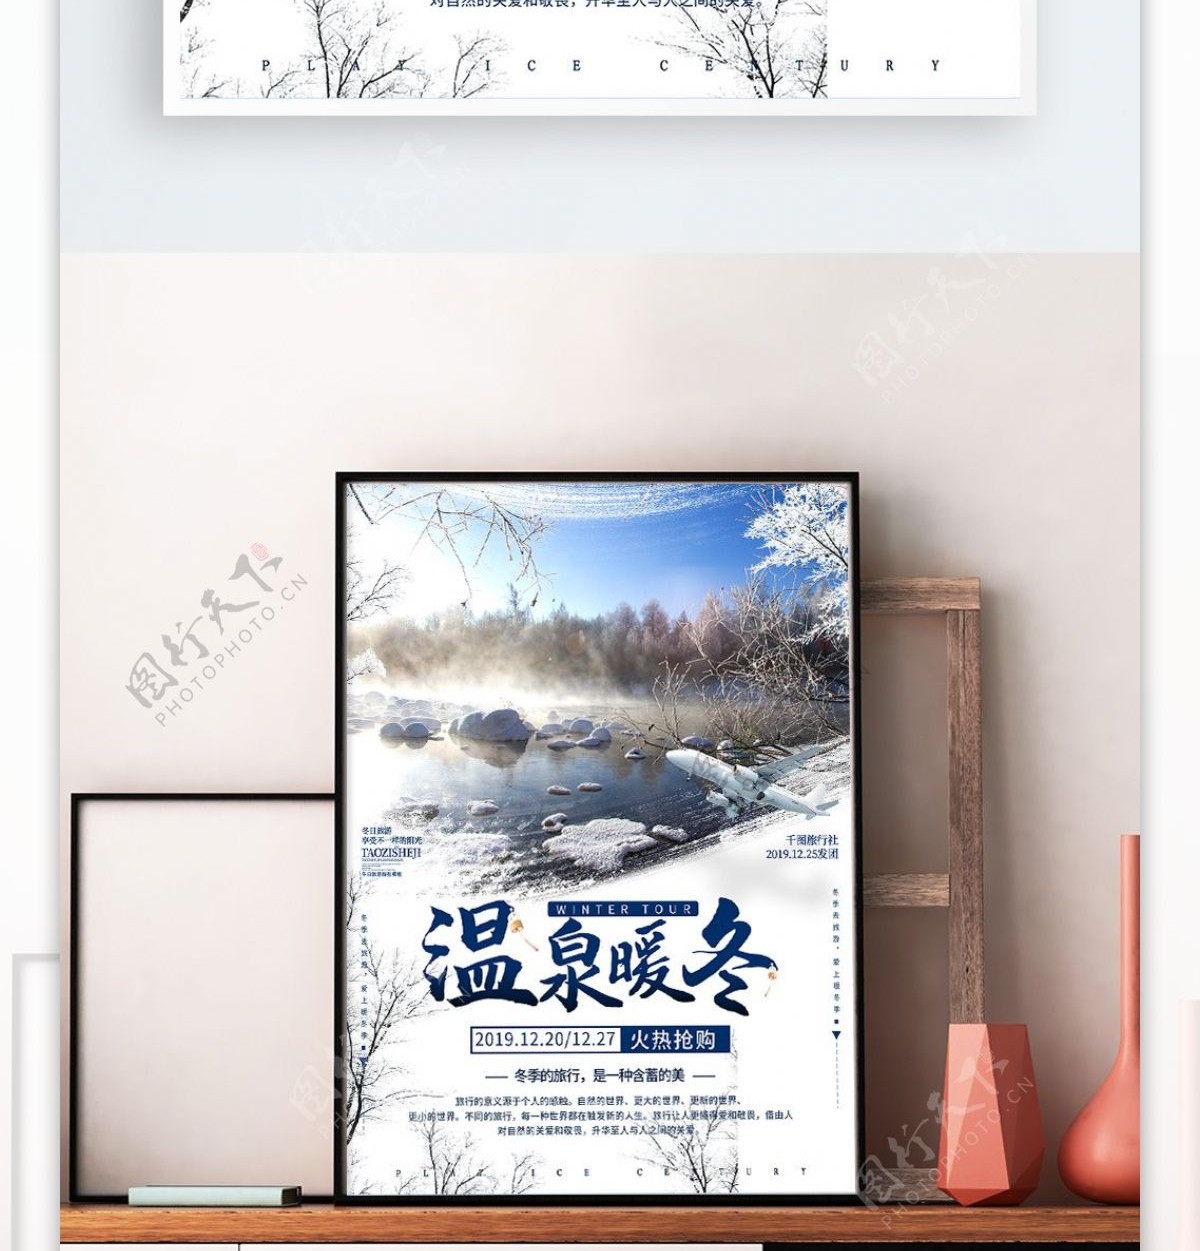 蓝色温泉暖冬冬季旅游海报设计